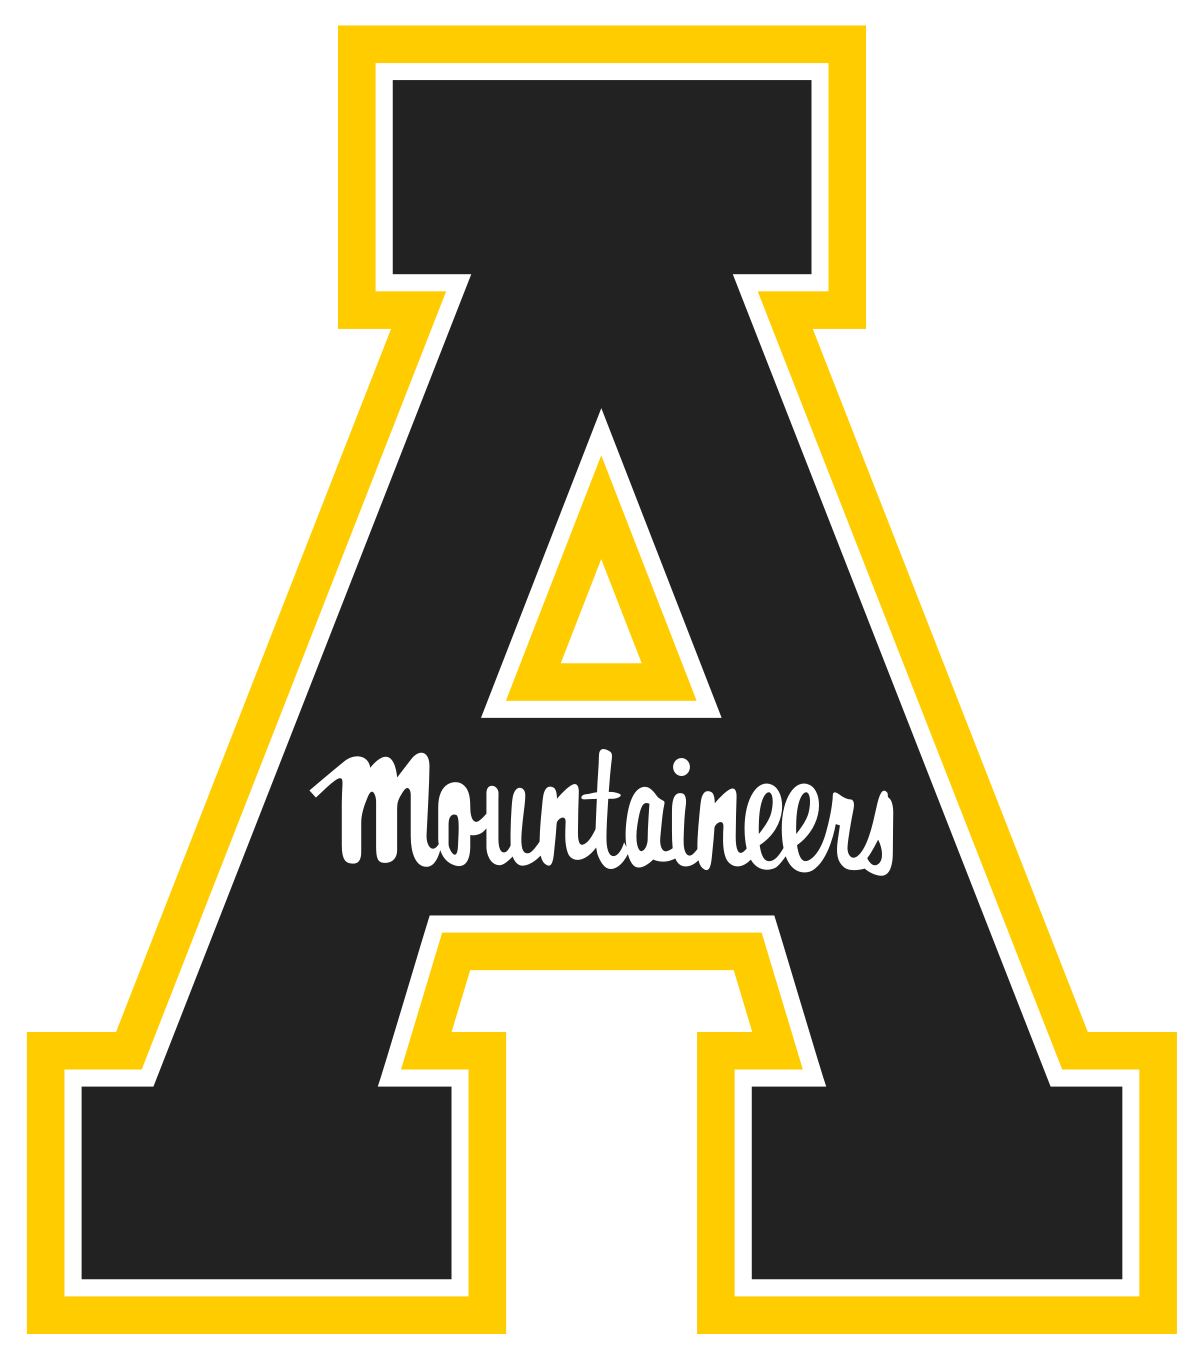 appalachian-state-university-logo-2